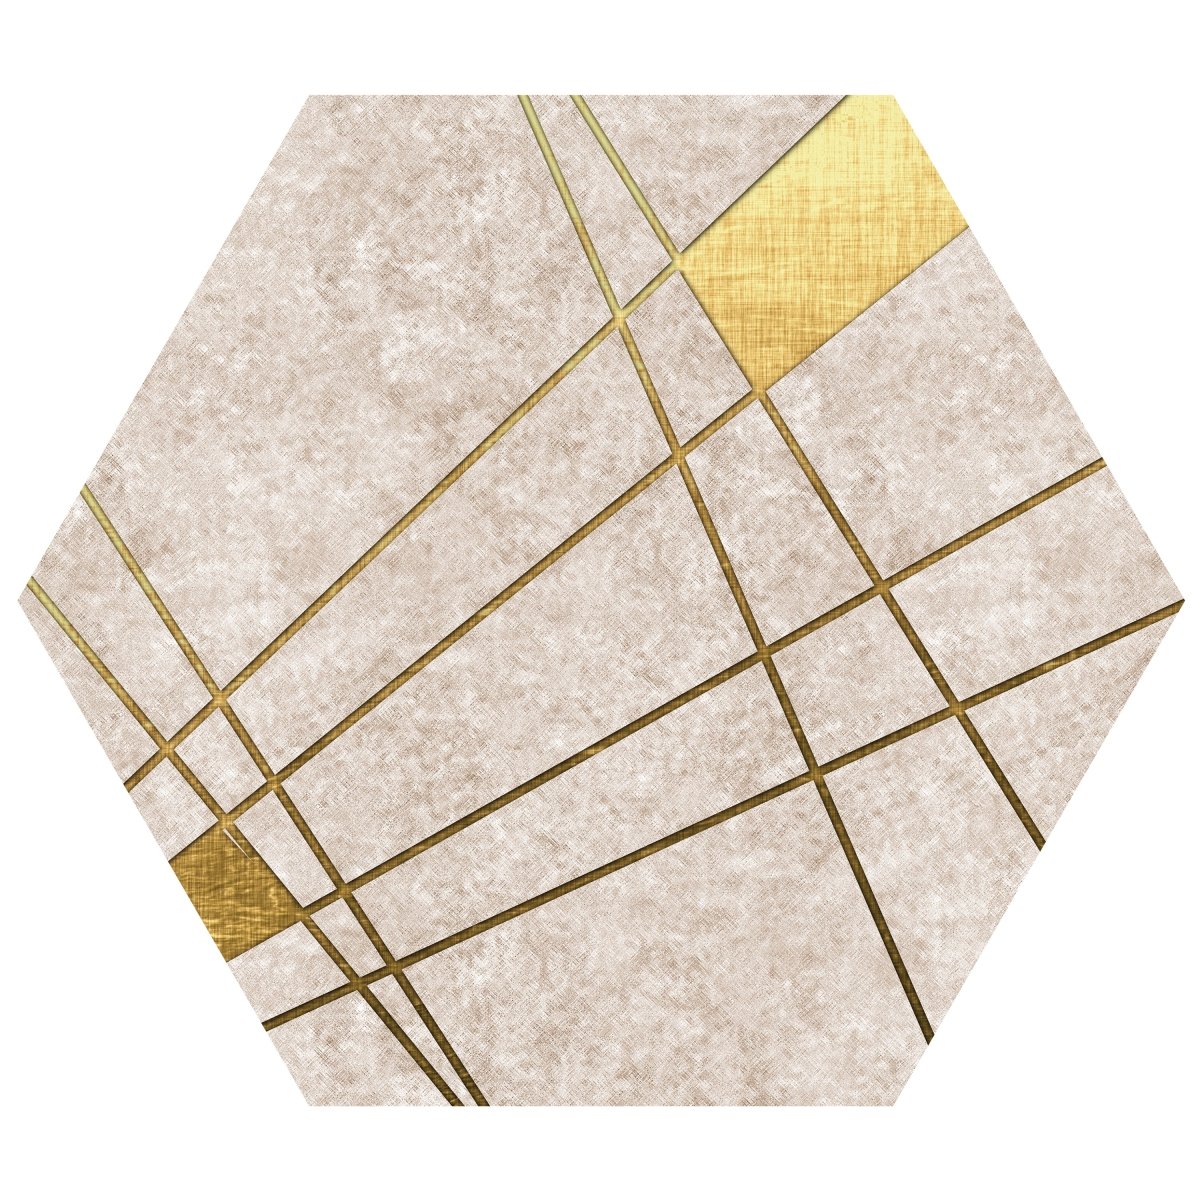 Hexagon-Fototapete Abstrakte goldene Linien M0009 - Bild 11